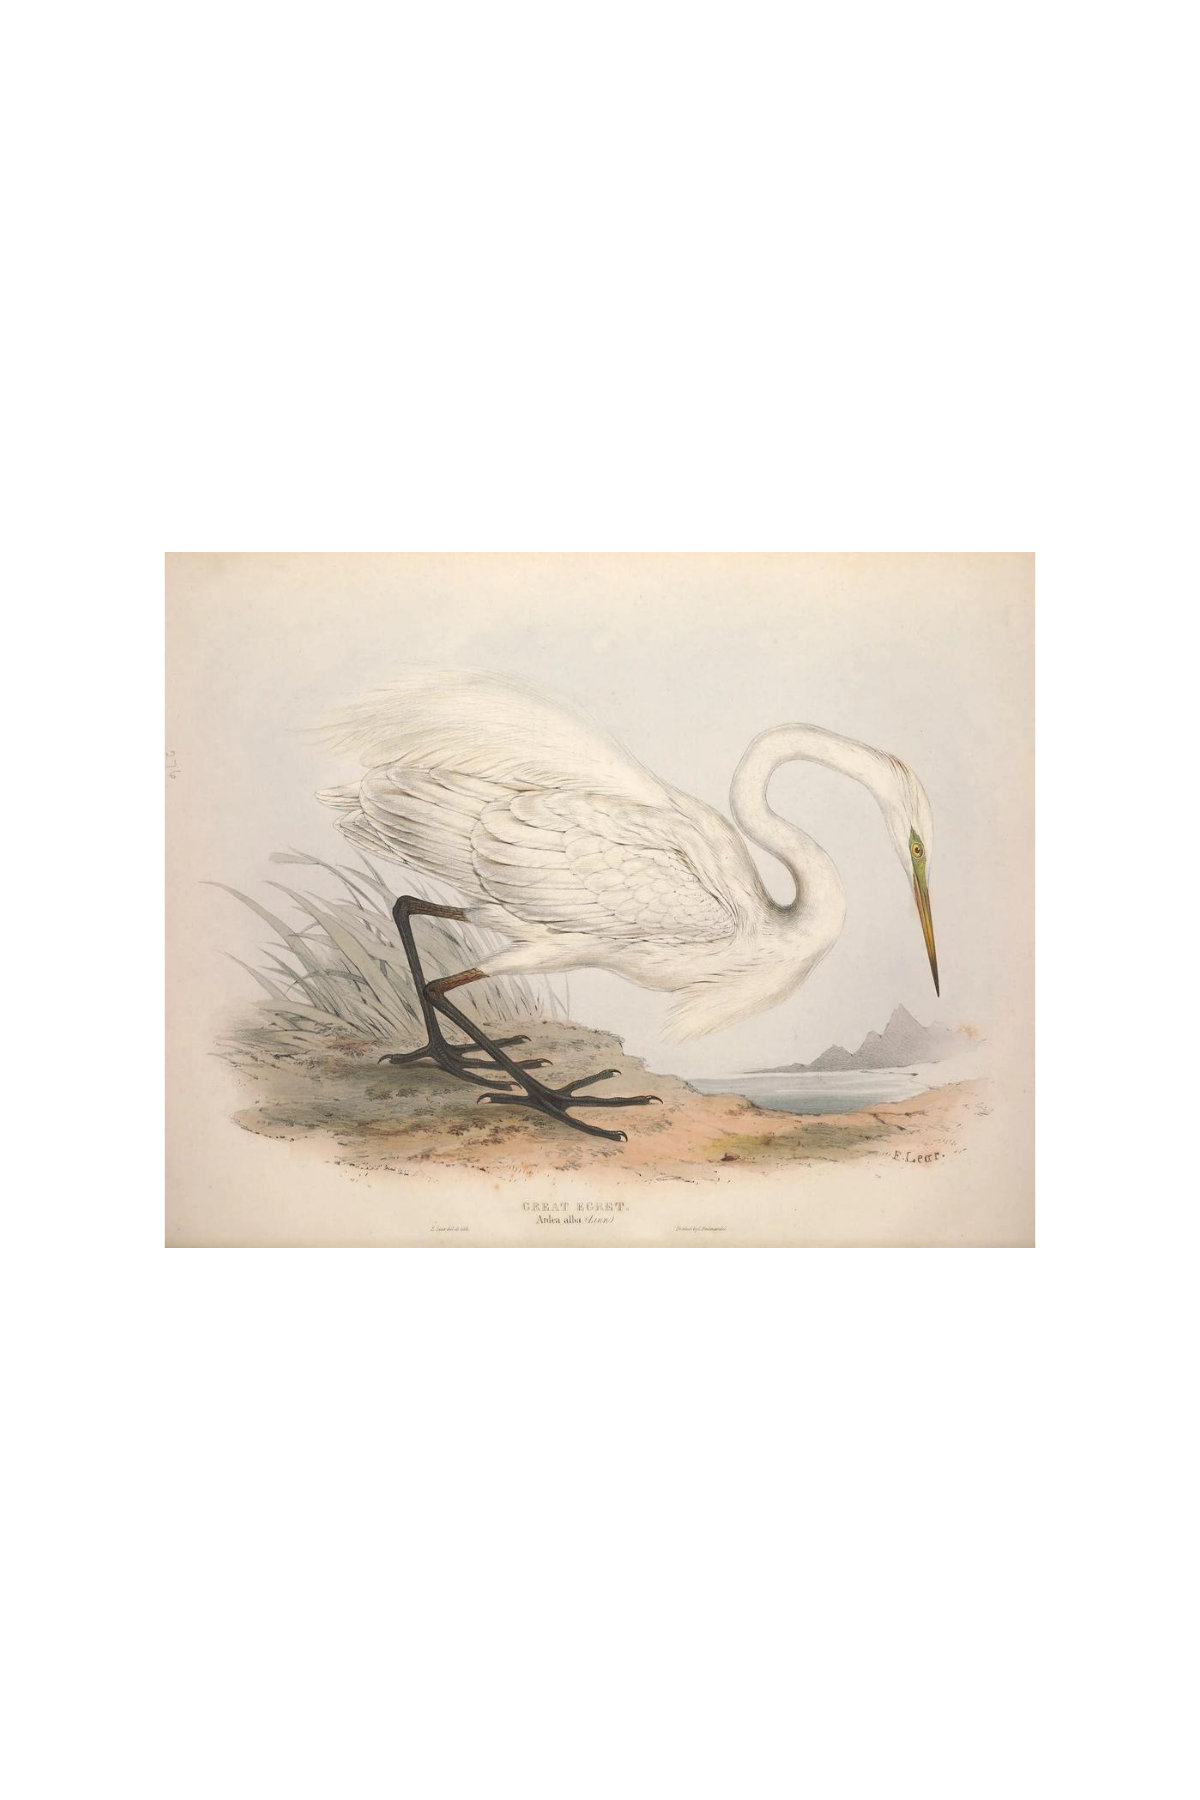 European Egret (Heron) Antique Art Print